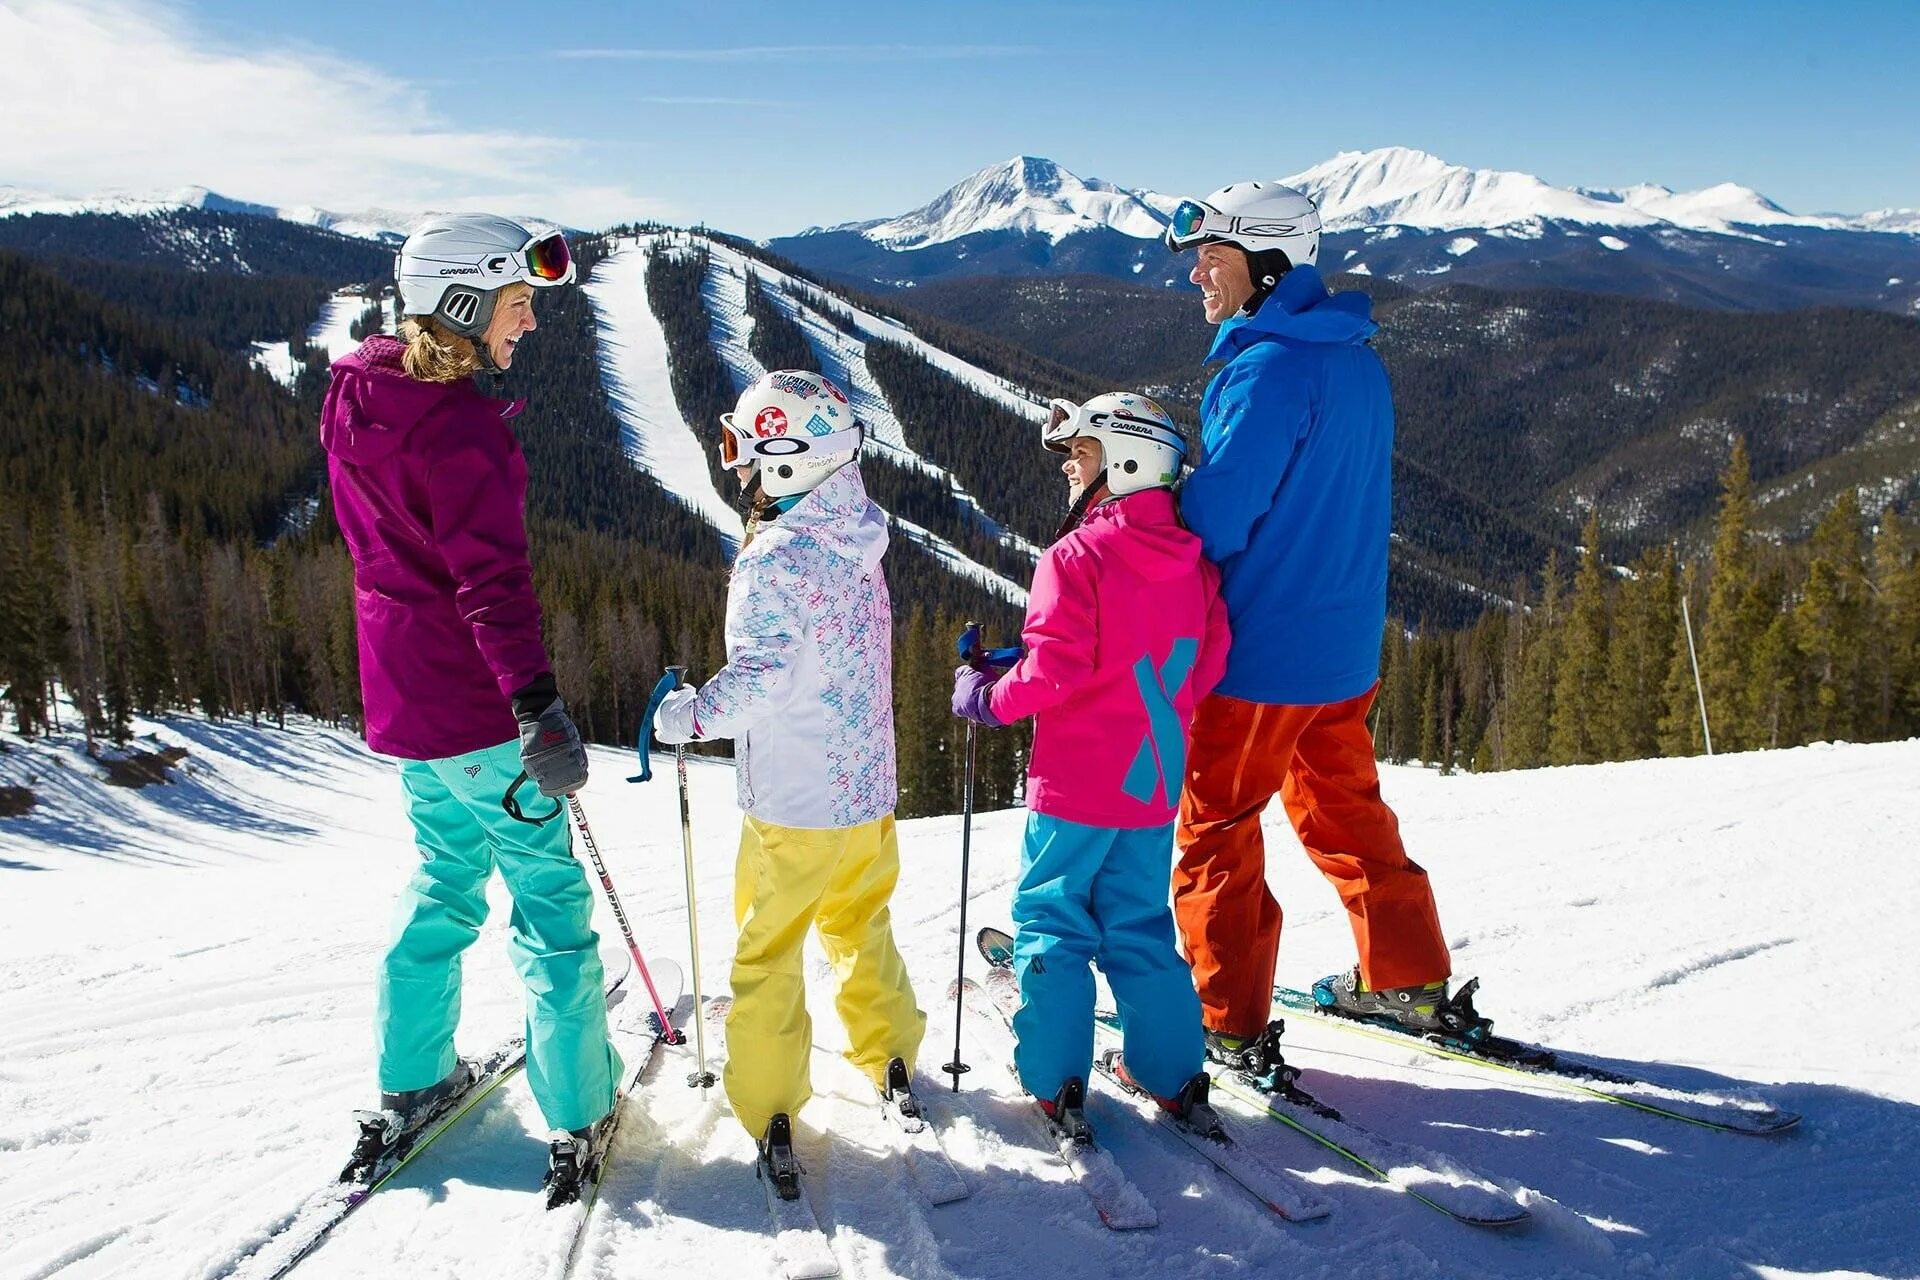 Катание на горнолыжном курорте. Катание на горных лыжах. Семья на горных лыжах. На лыжах всей семьей. Семья на сноубордах.